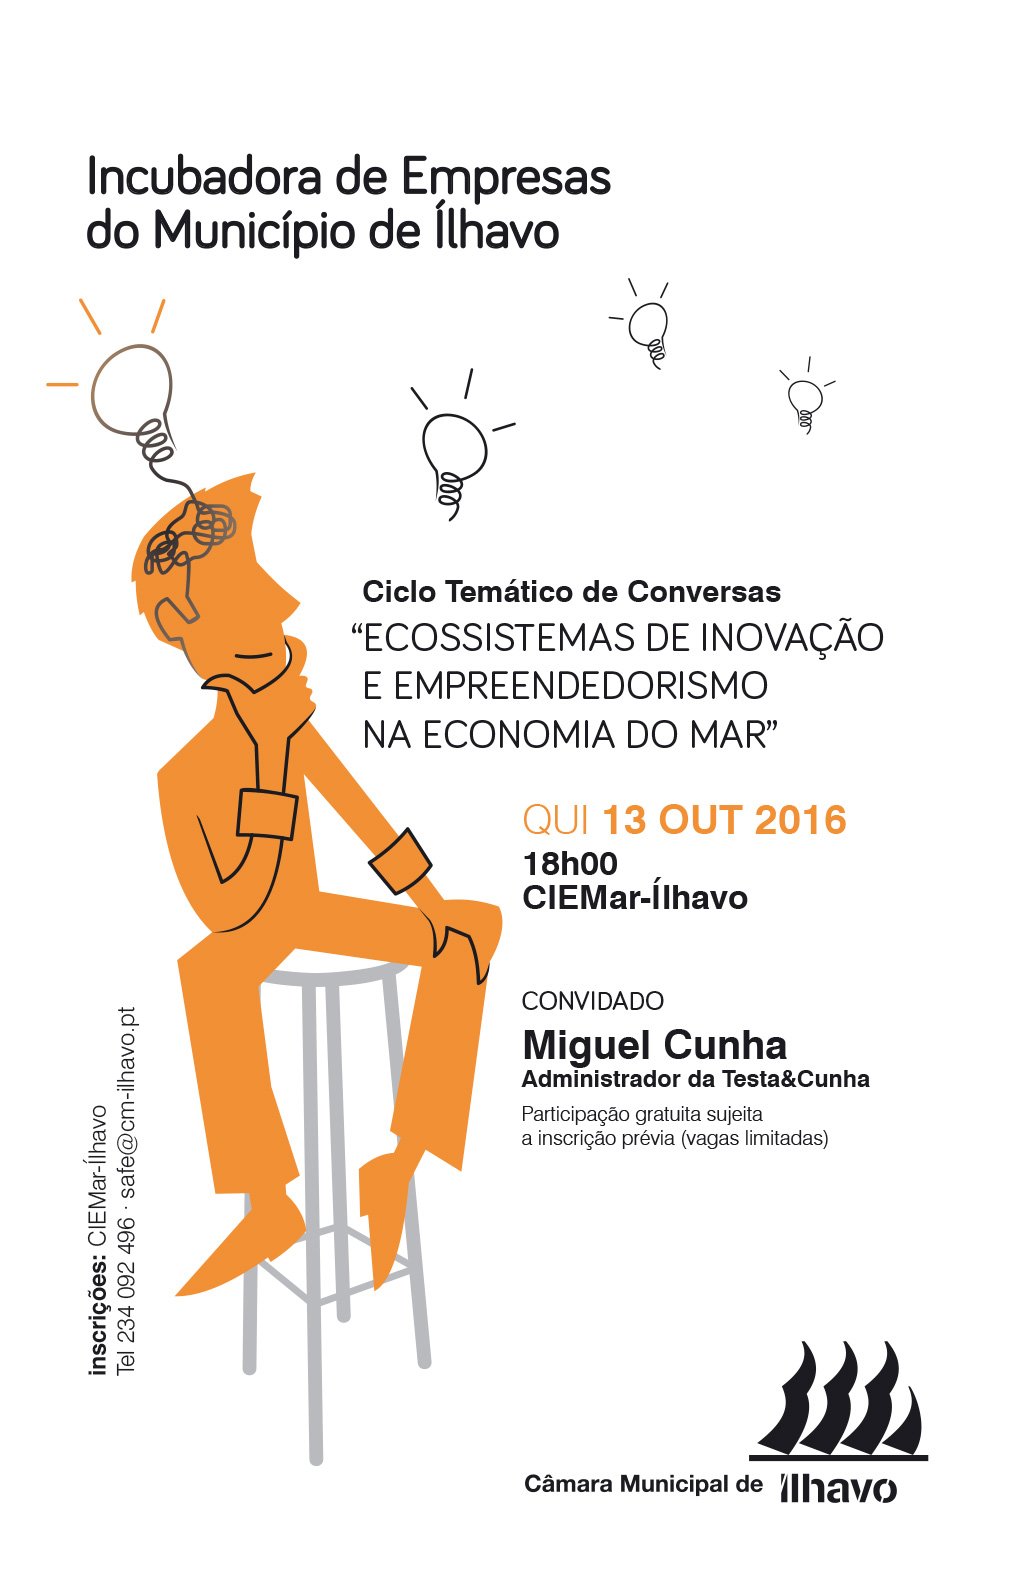  Ciclo Temático “Ecossistemas de Inovação e Empreendedorismo na Economia do Mar”  